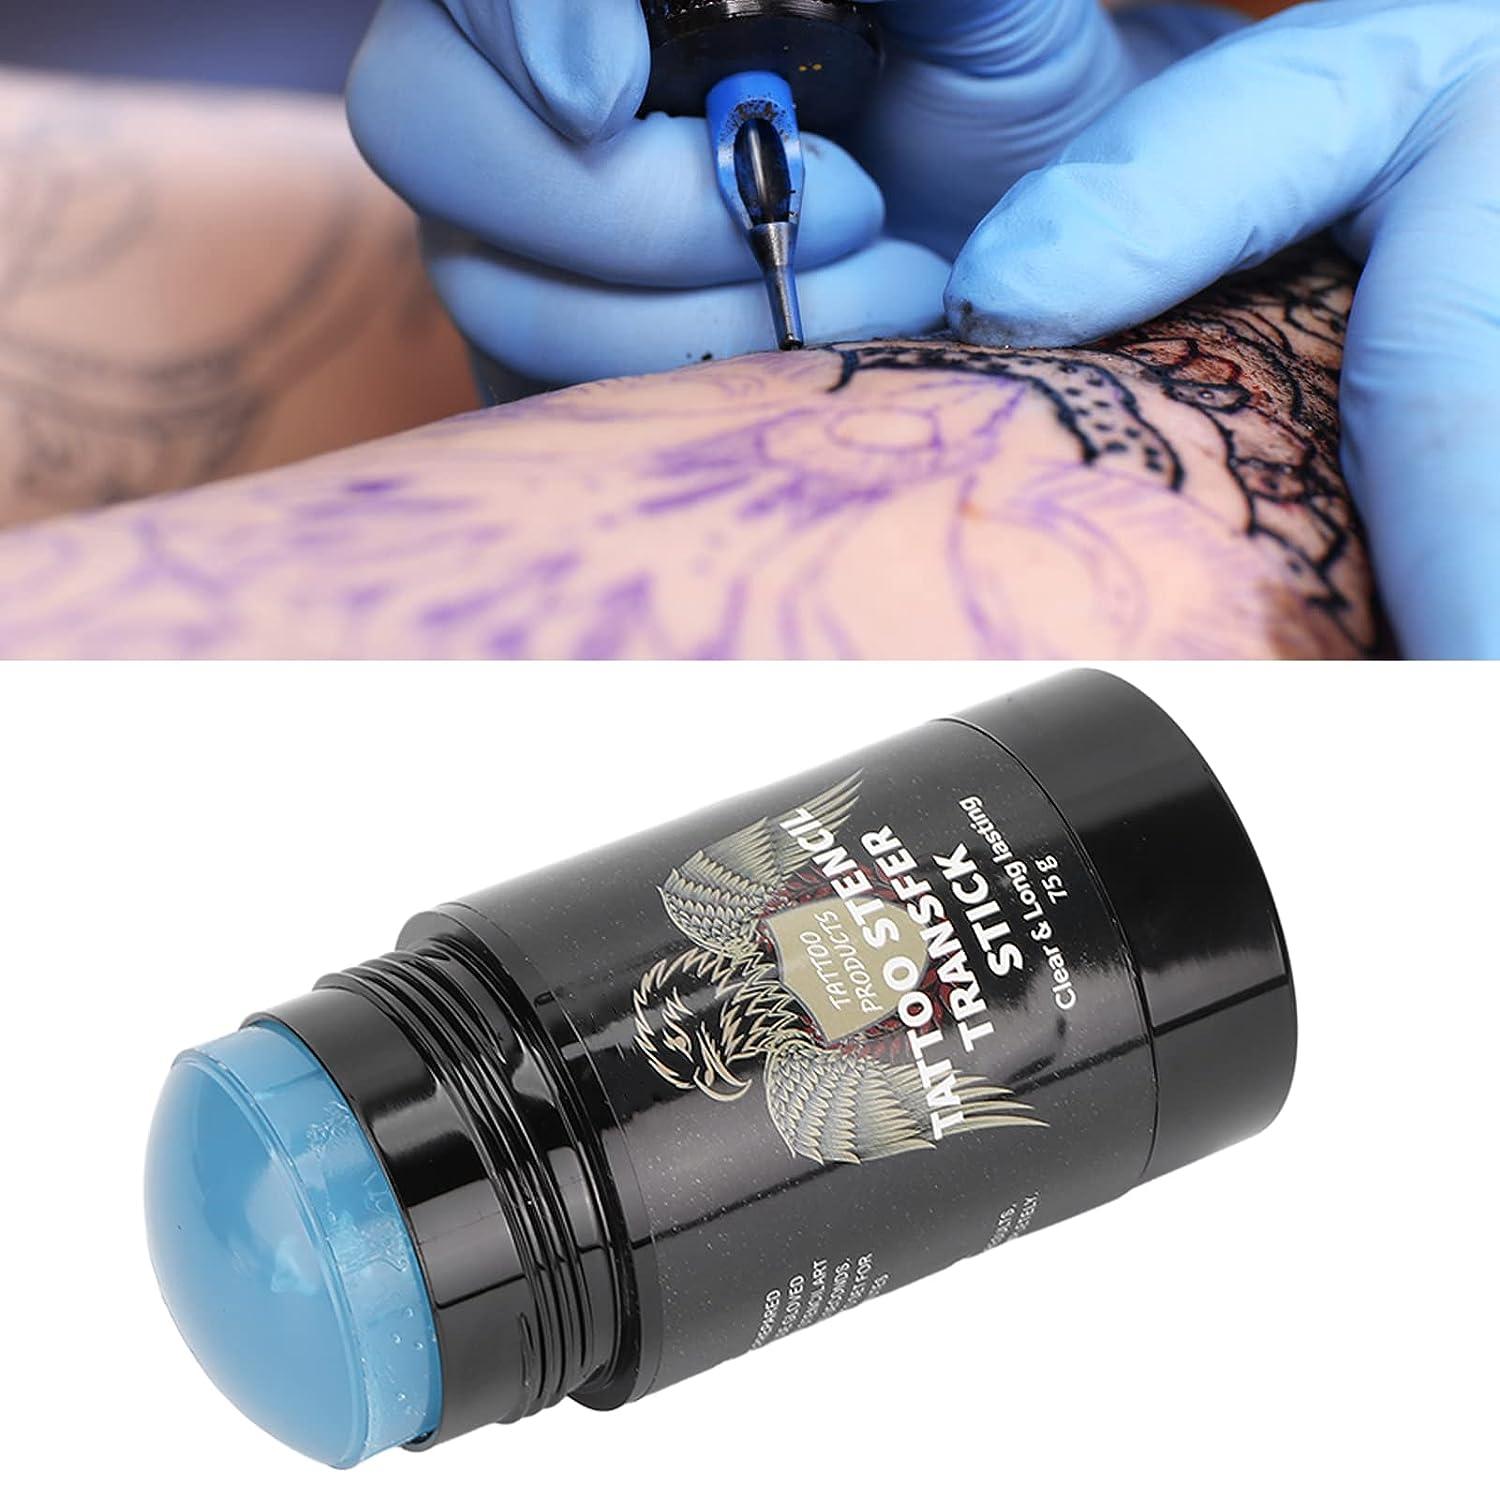 30ml Tattoo Transfer Gel Safe Transparent Tattoo Stencil Primer